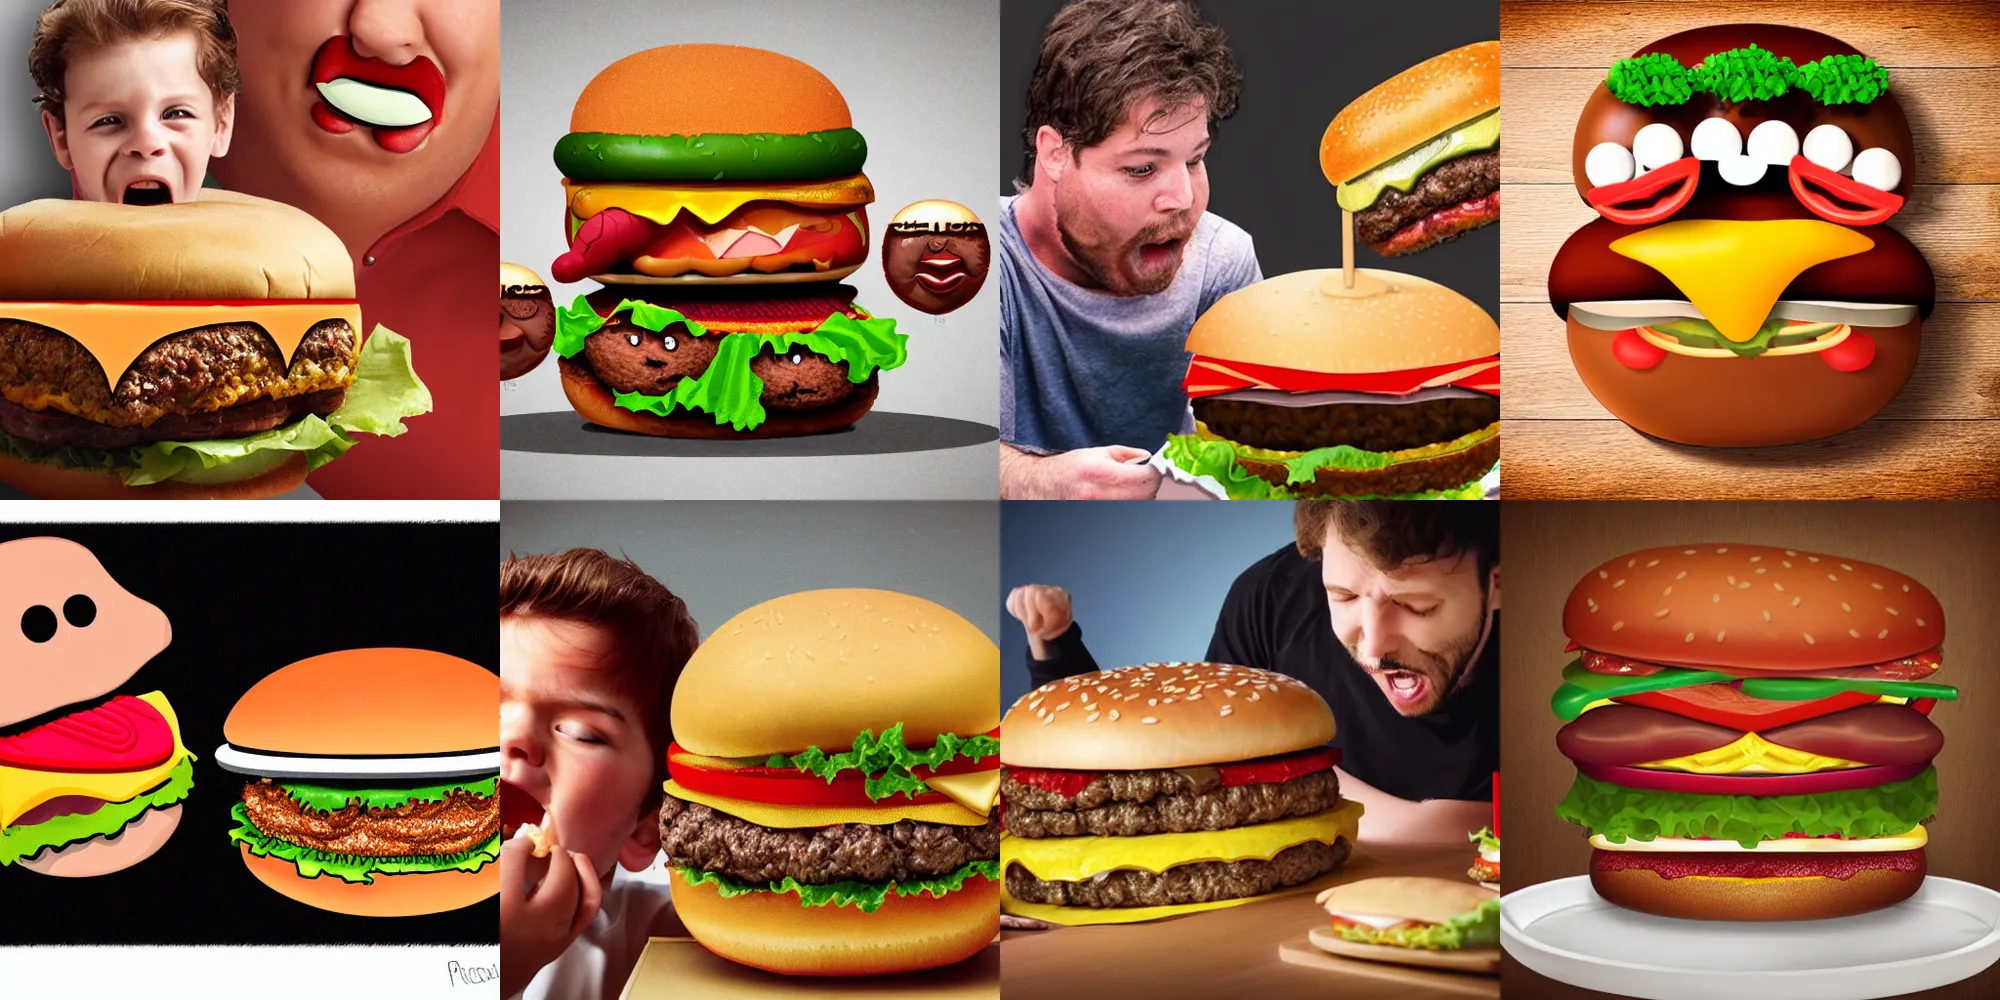 Prompt: a big hamburger eating a man photorealistic hamburger with teeths and a mouth eating a tiny human